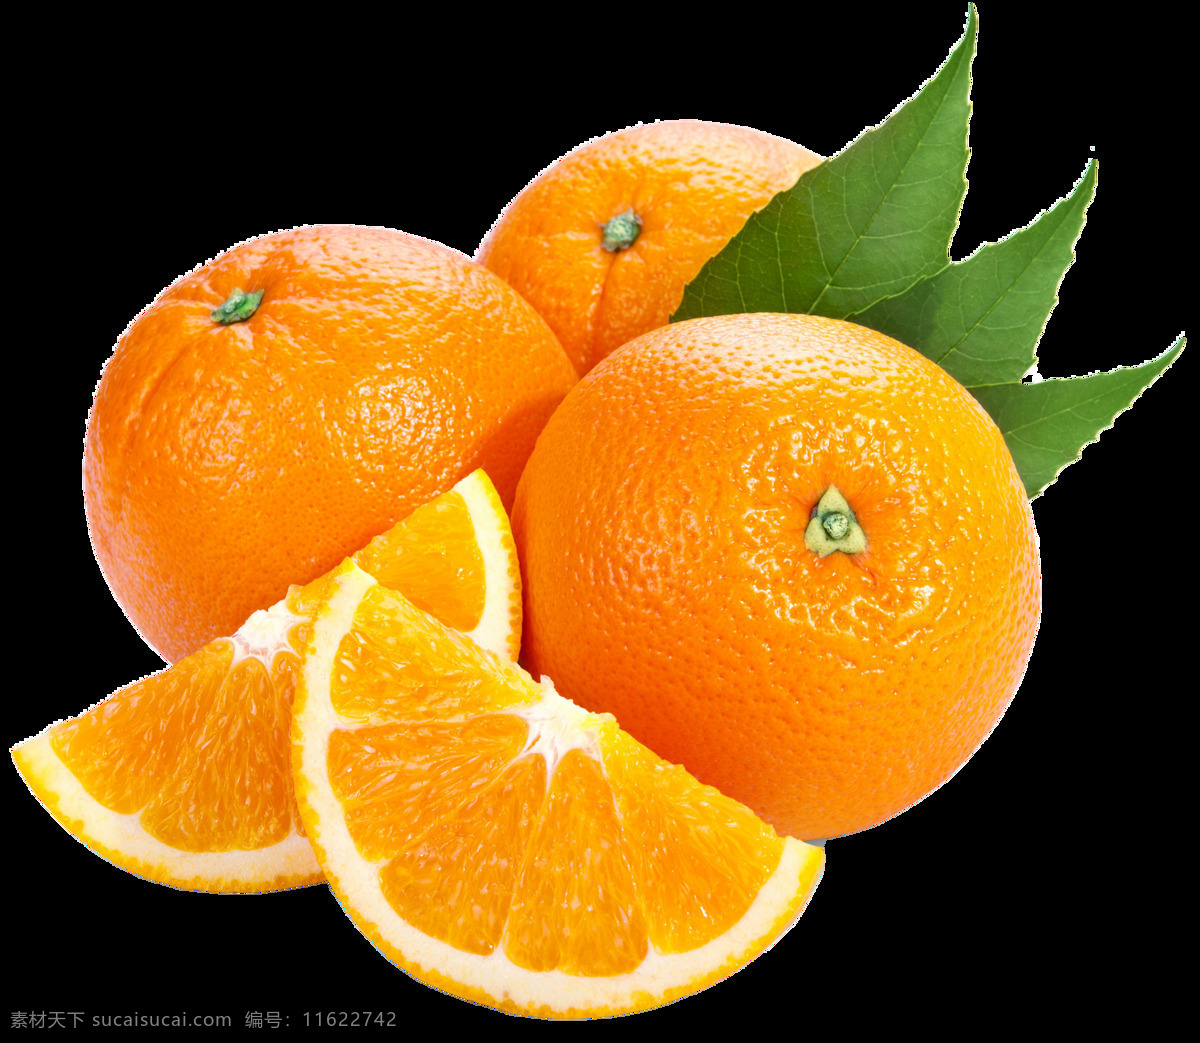 新鲜 橙子 水果 免 抠 透明 图 层 各种 真实 单个水果图片 大全 大图 水果图片素材 真实水果图片 小 清新 背景图片 水果种类大全 一堆水果 堆 一起